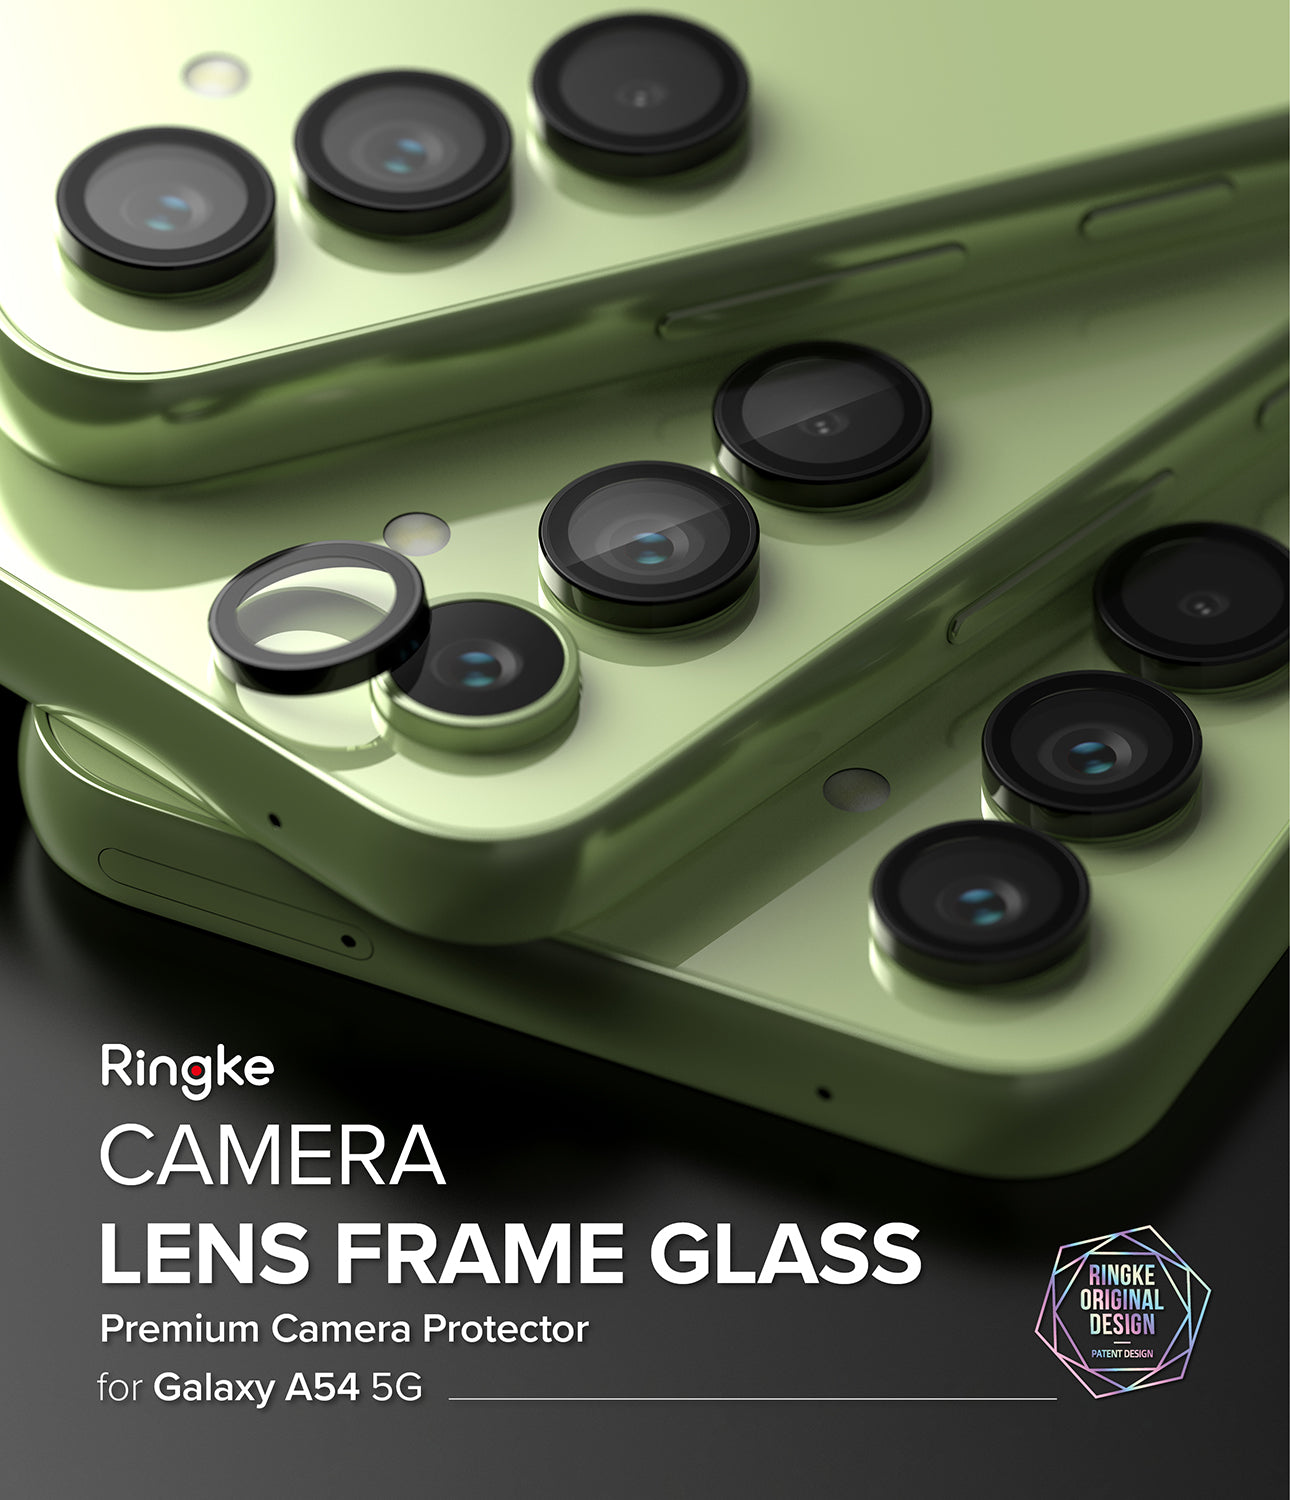 Camera Lens Frame Glass for Galaxy A54 5g